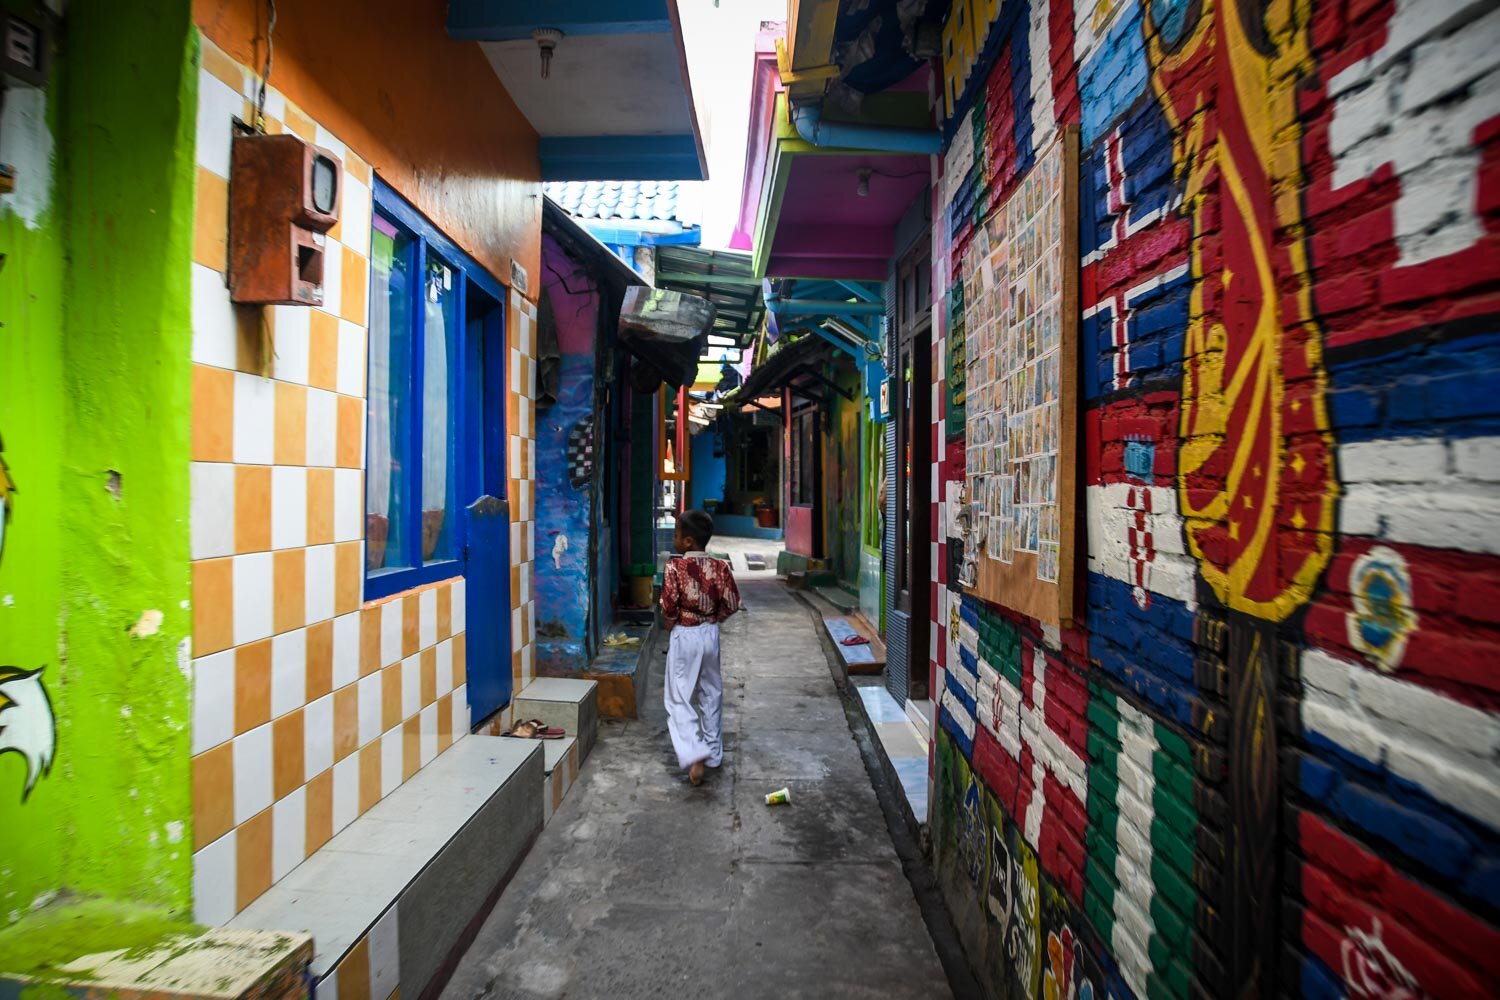 Jodipan Houses Kampung Warna Warni Malang Rainbow Village